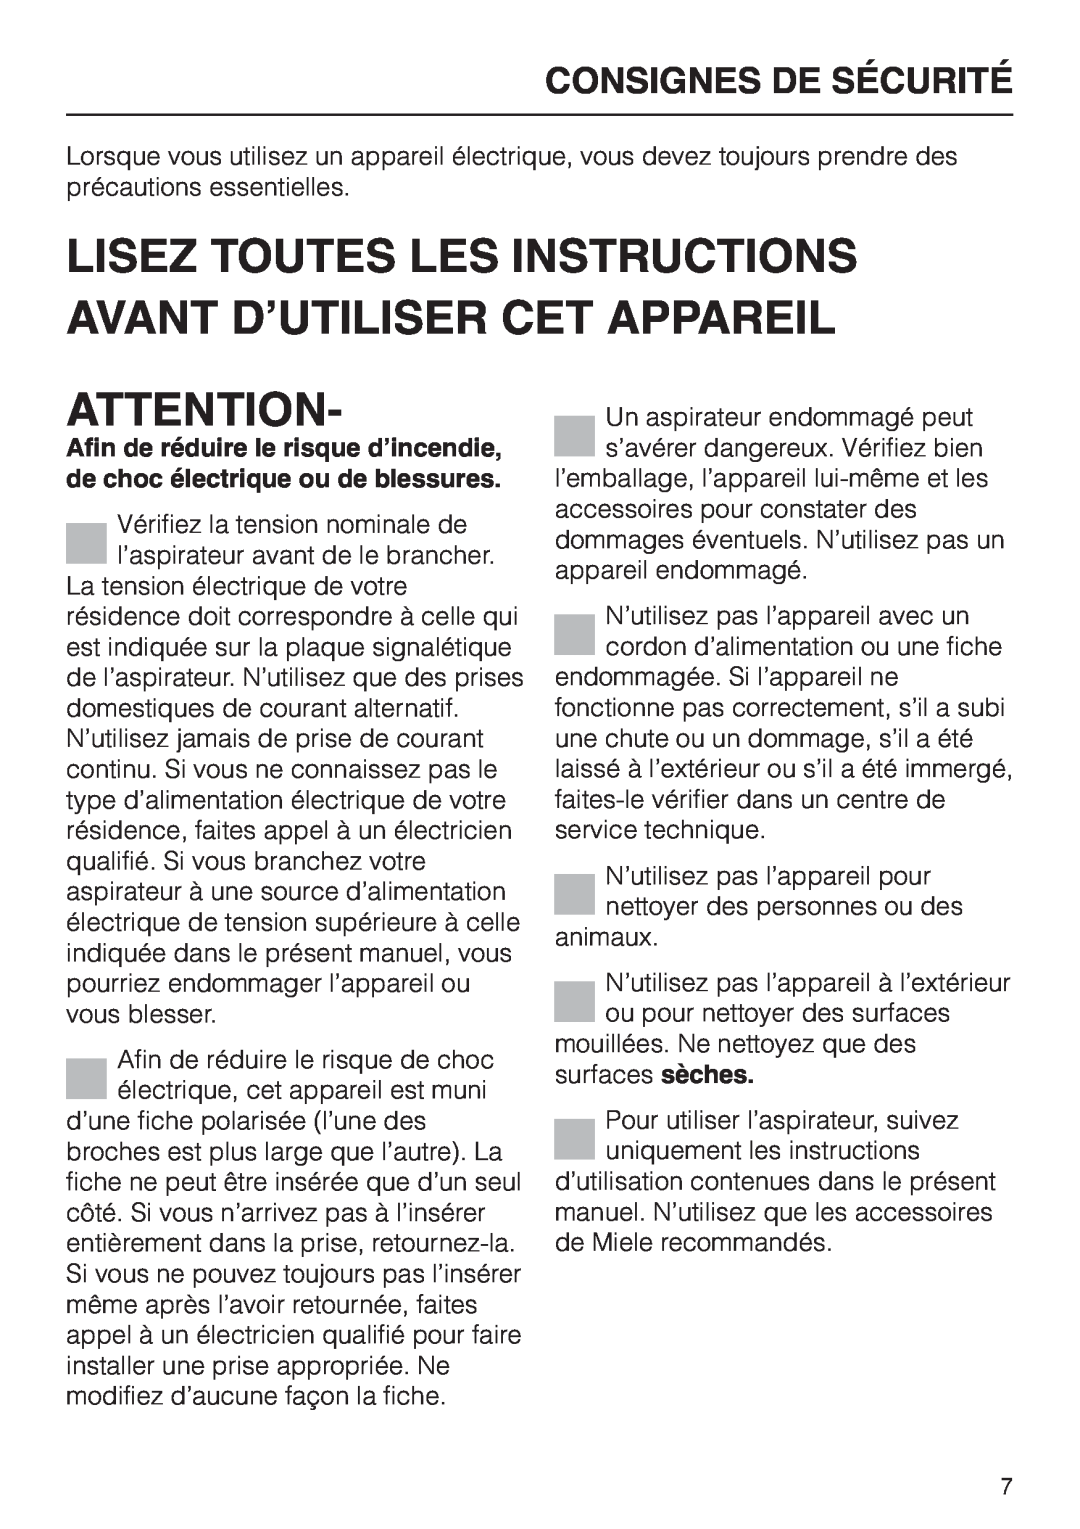 Miele HS09 operating instructions Consignes De Sécurité 